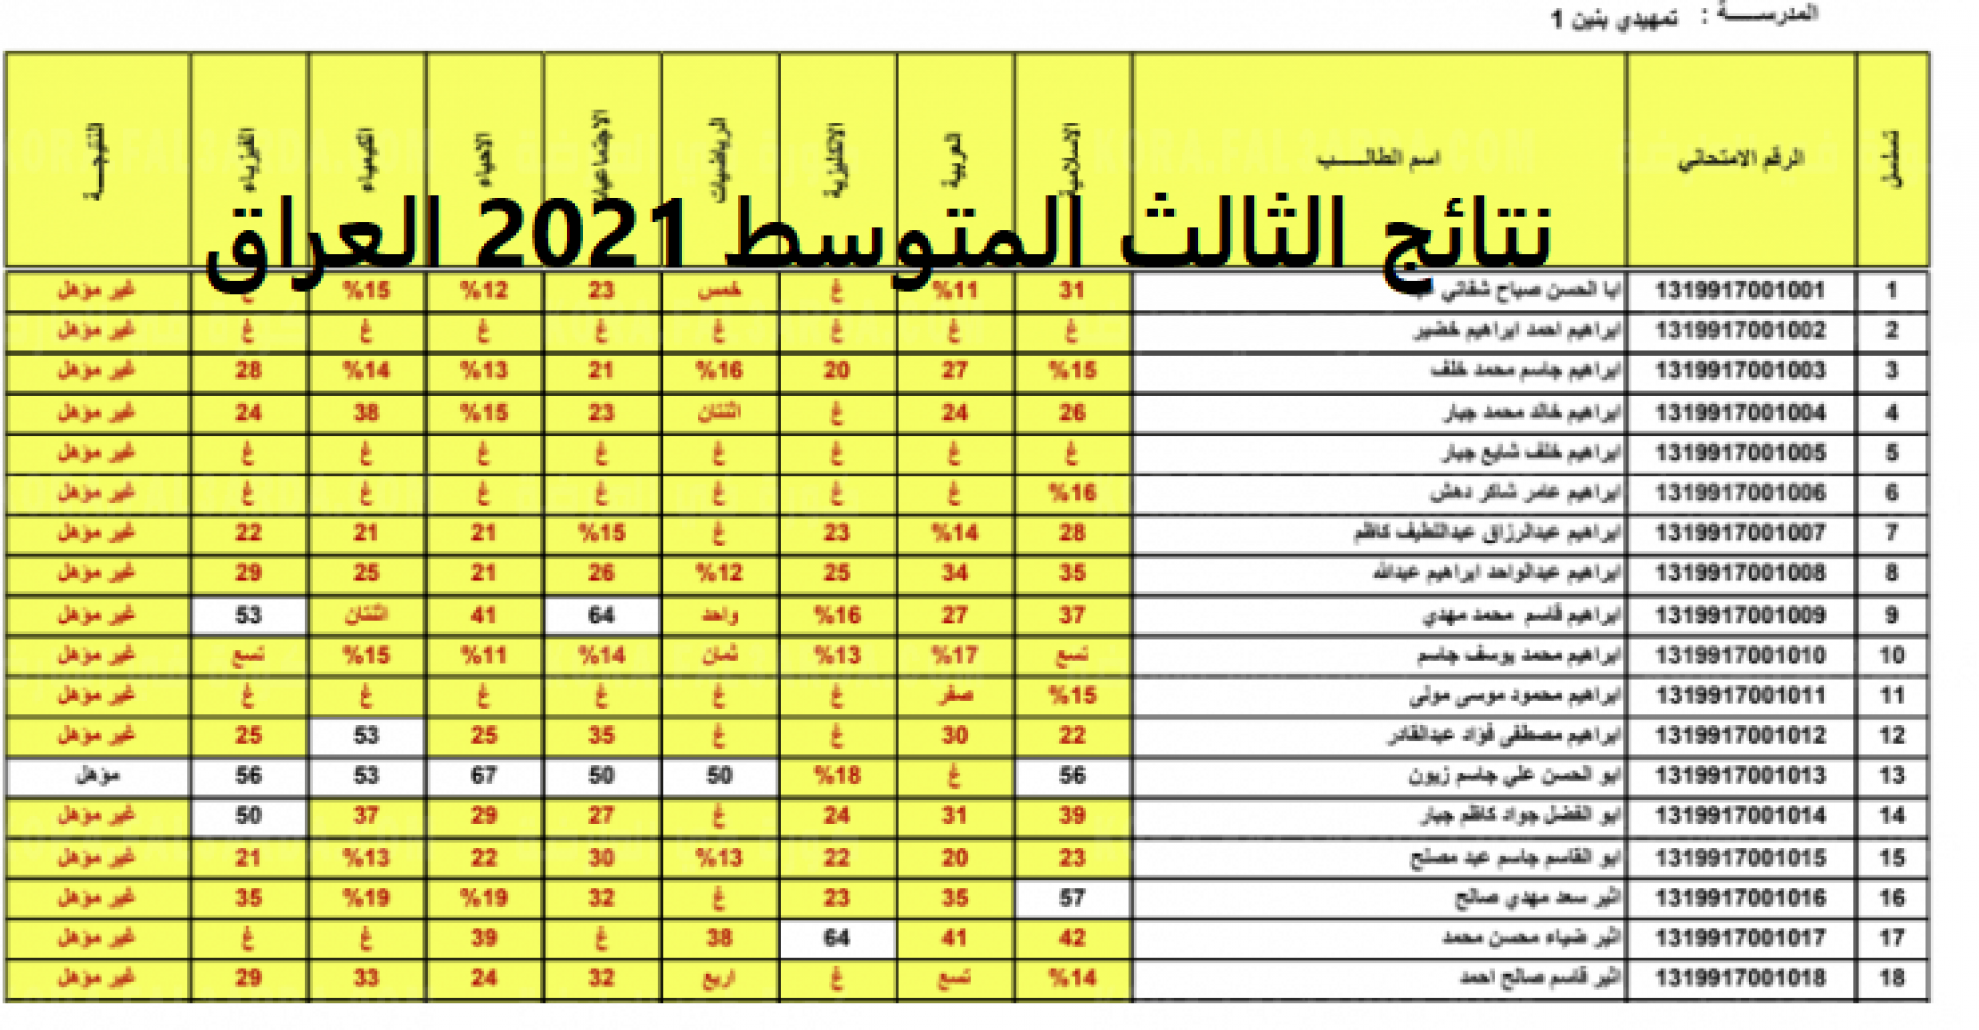 نتائج الصف الثالث متوسط الدور الثالث 2021 "ظهرت الأن" على موقع الوزارة لجميع المحافظات